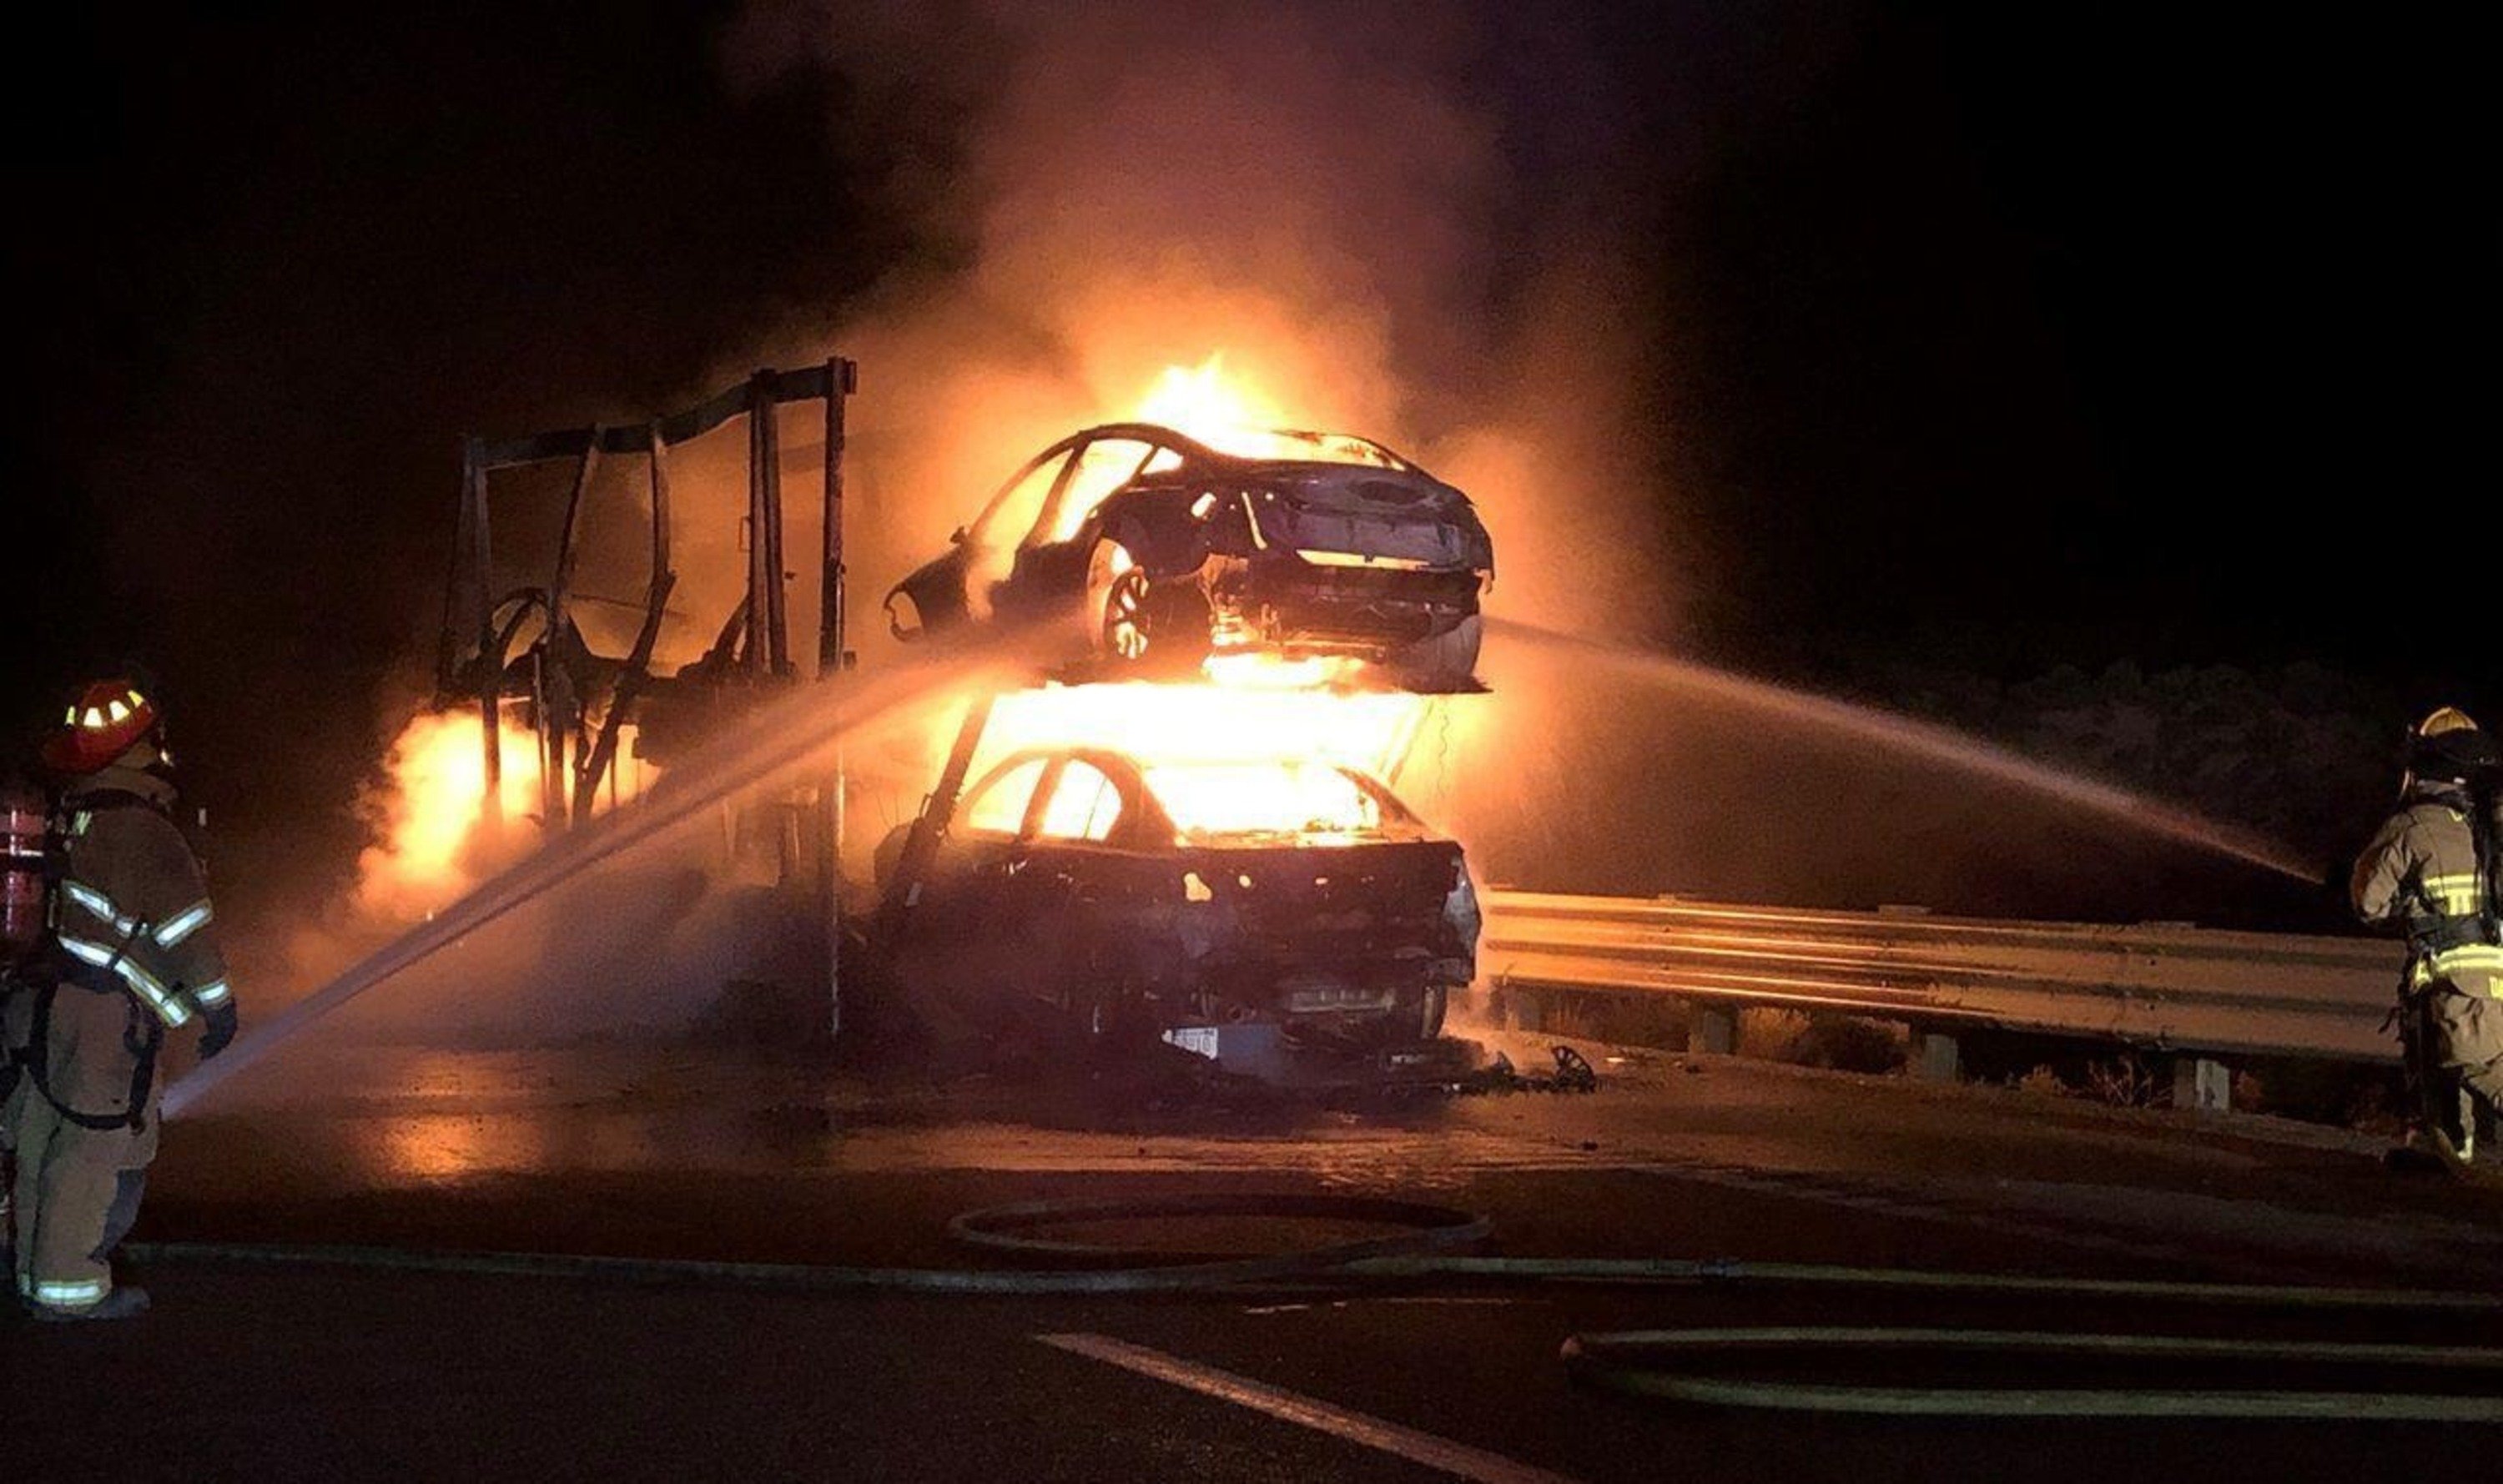 Tesla, A fuoco la bisarca con Model 3 e Model S: incredibile incendio in autostrada [foto gallery]